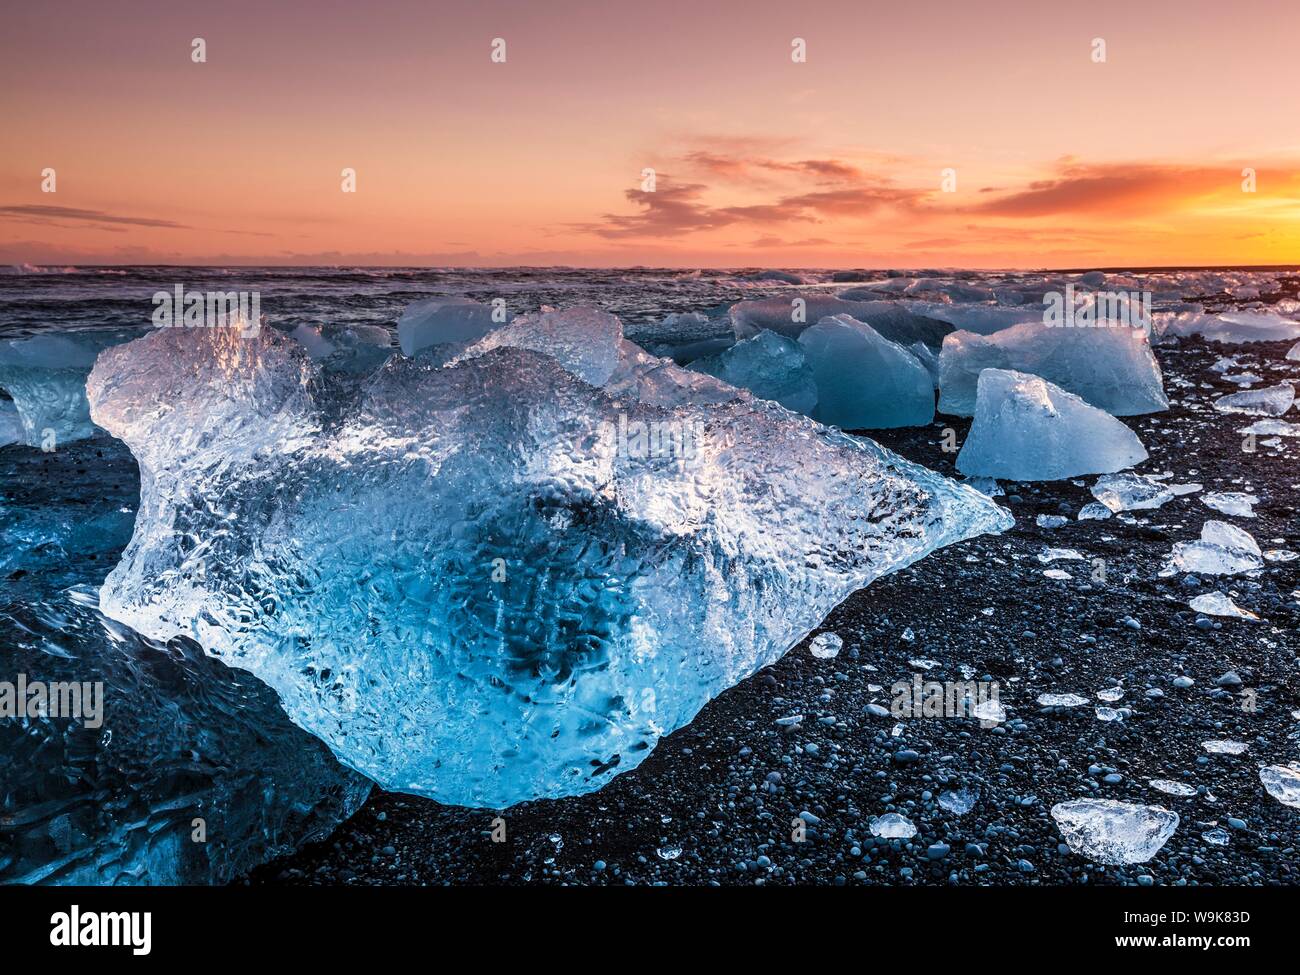 Gebrochenes Eis aus angespülten Eisberge am Jökulsárlón schwarzen Strand bei Sonnenuntergang, Jökulsárlón, südöstlichen Island, Island, Polarregionen Stockfoto